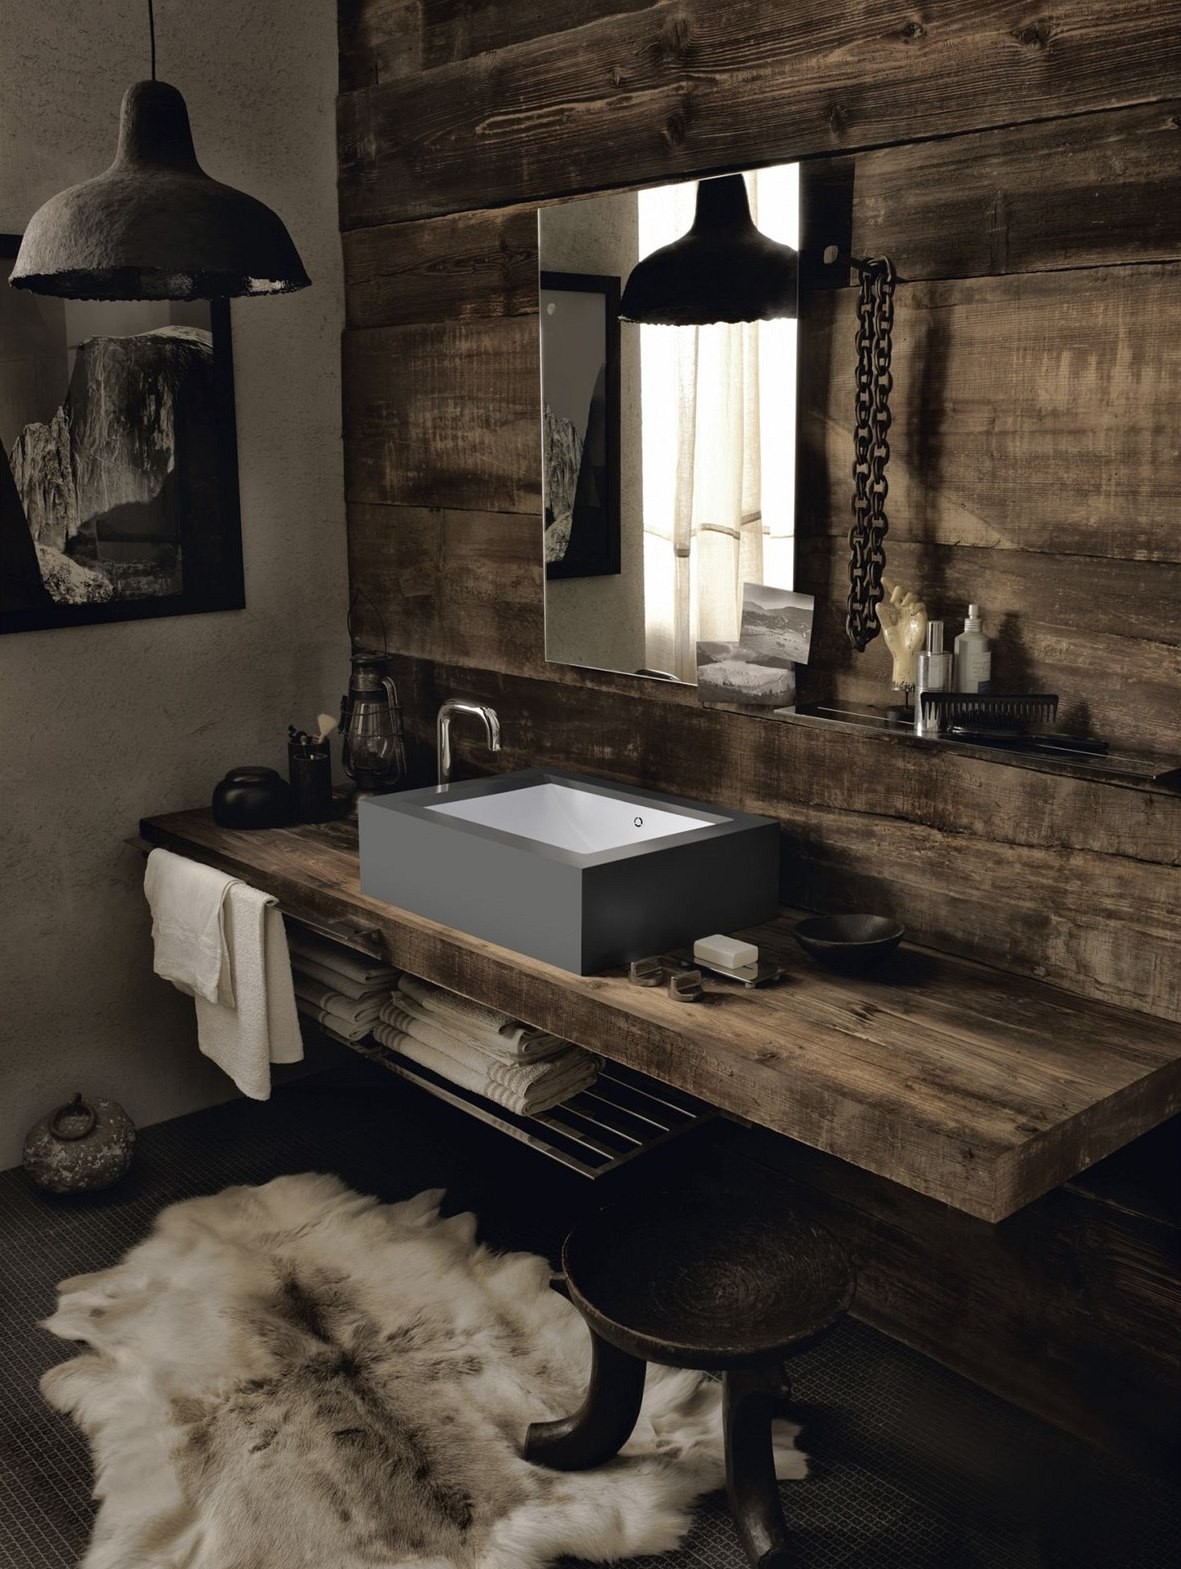 Hrubo pritesaná drevená doska a industriálne šedé umývadlo tvoria v kúpeľni drsnejší dojem. 